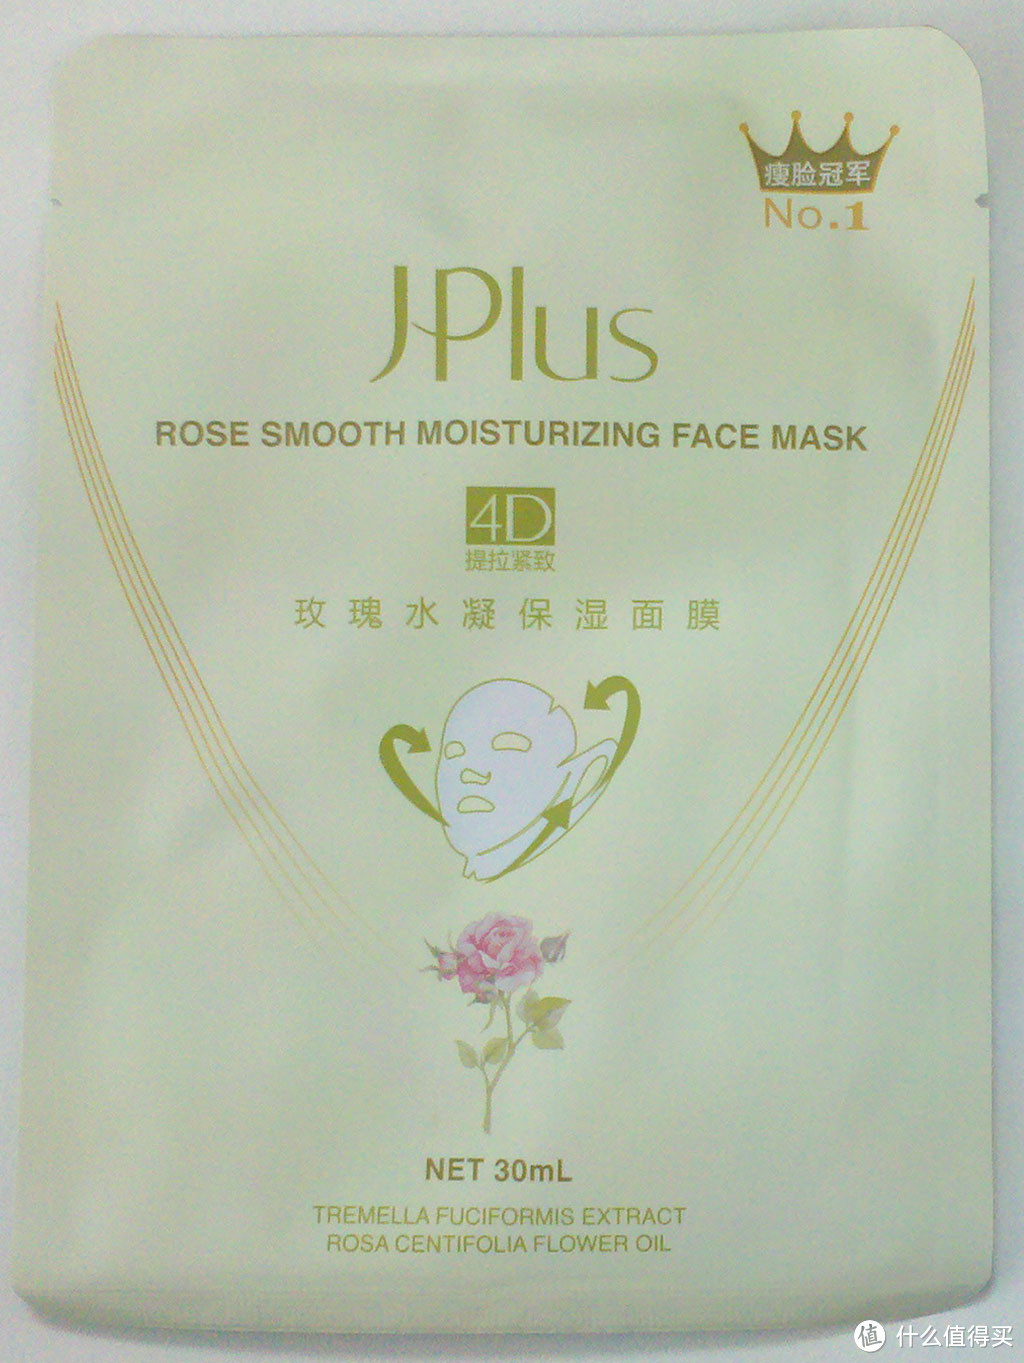 第一个评测报告之Jplus 静佳 4D玫瑰水凝保湿面膜。